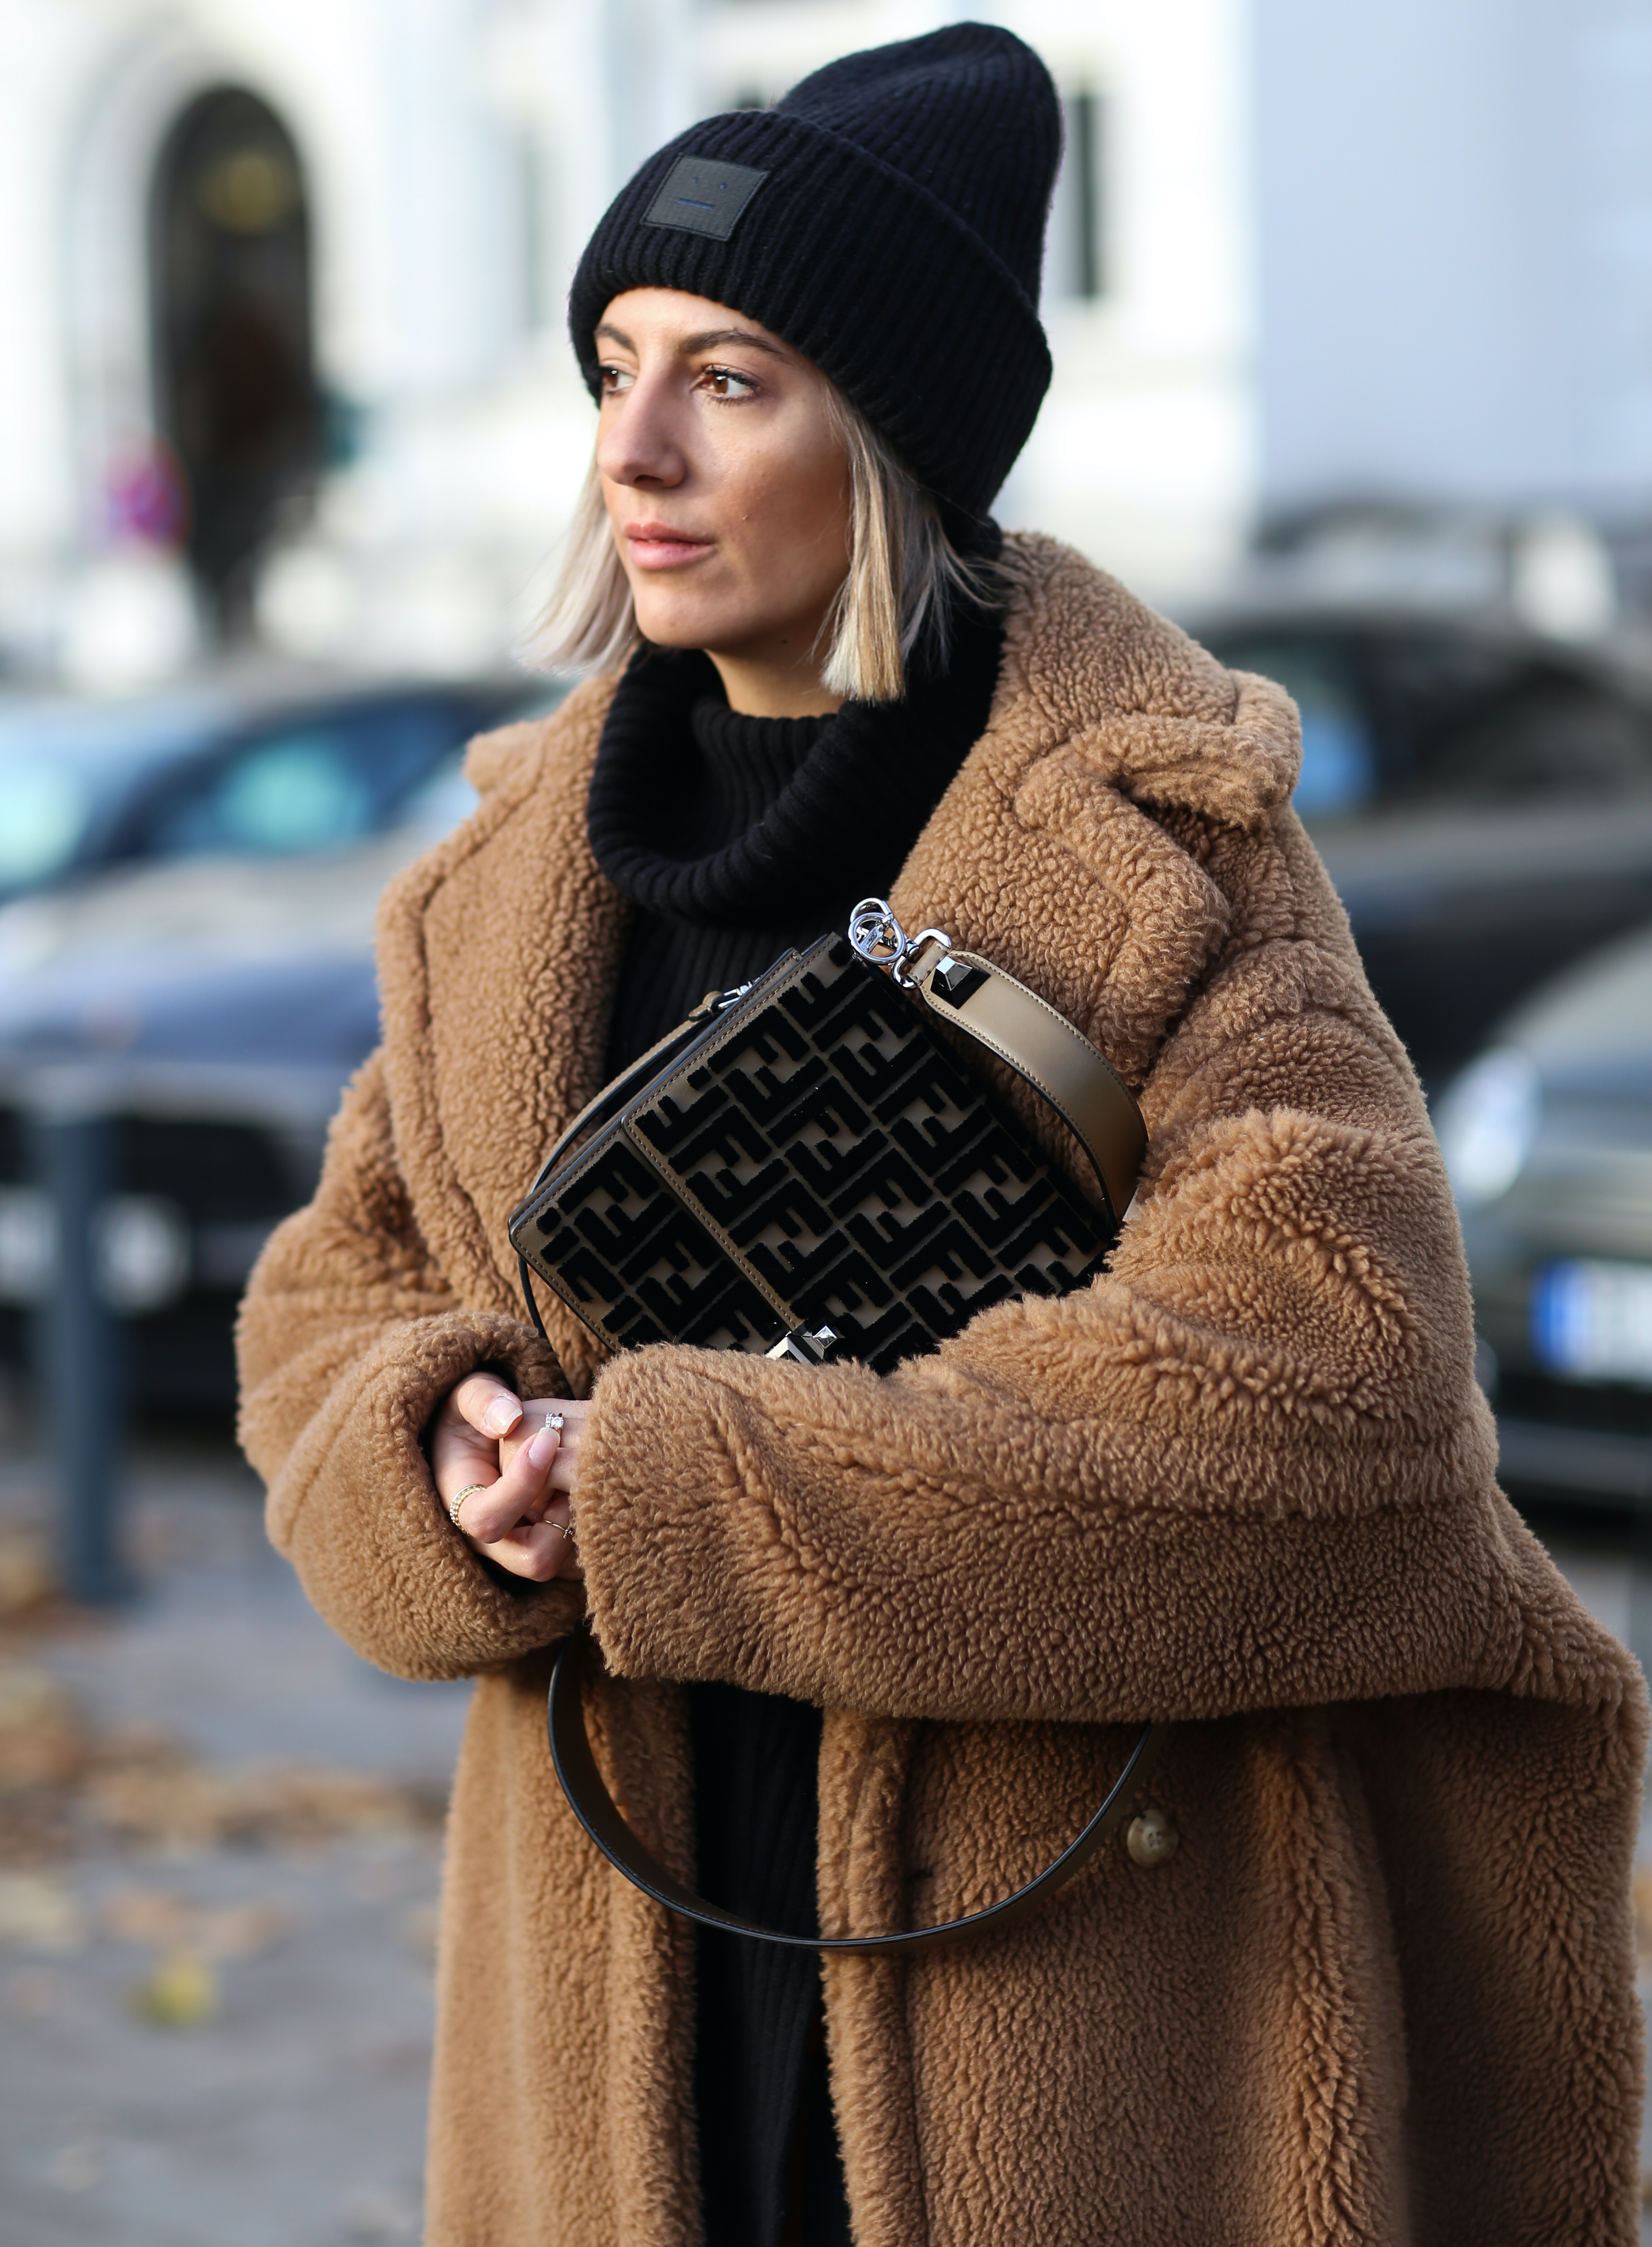 Manteaux tendance : 25 modèles parfaits pour cet hiver - Femme Actuelle